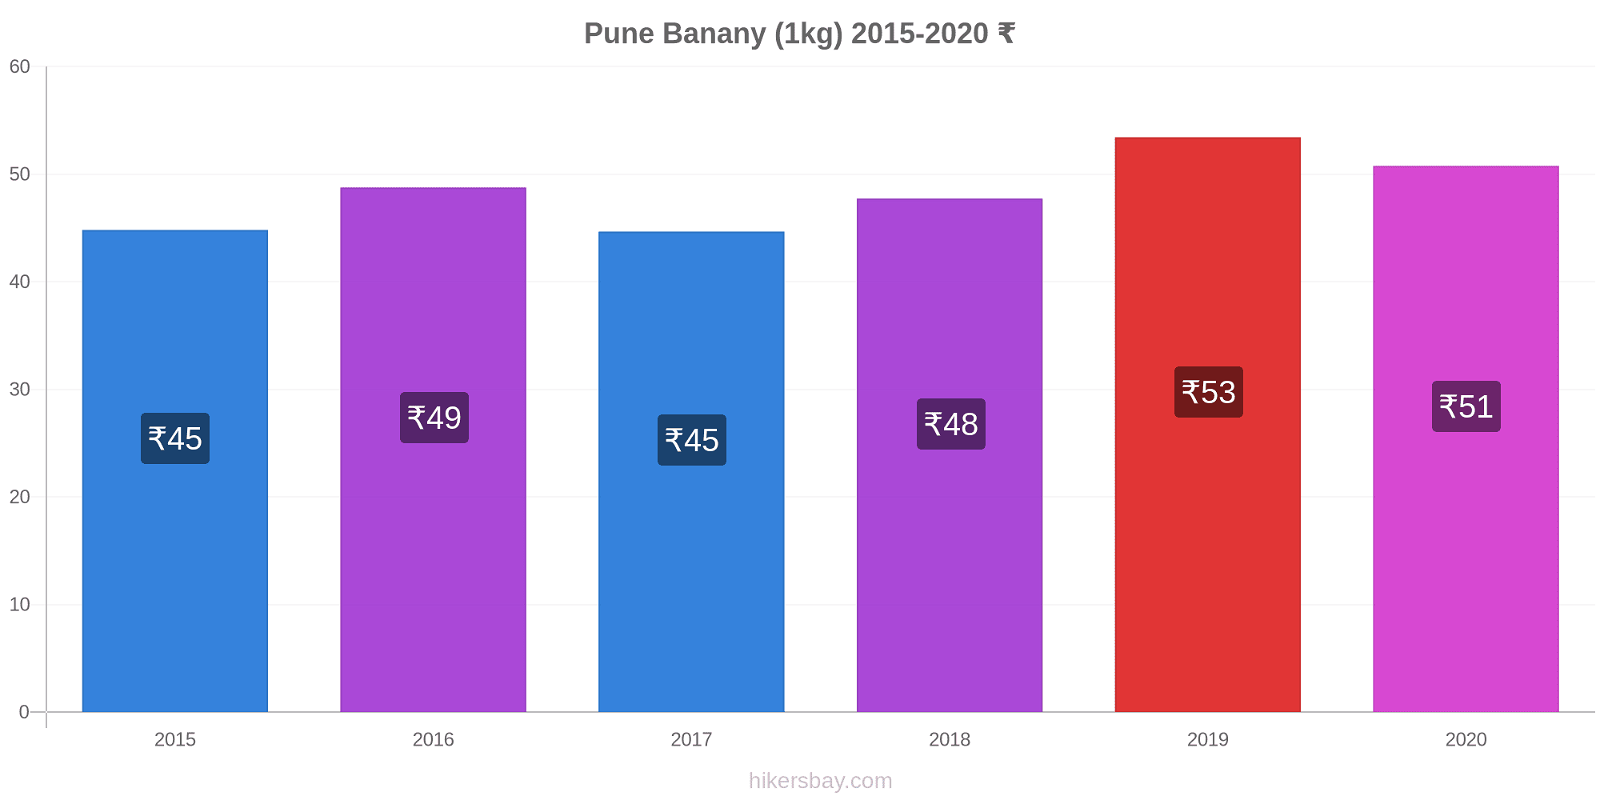 Pune zmiany cen Banany (1kg) hikersbay.com